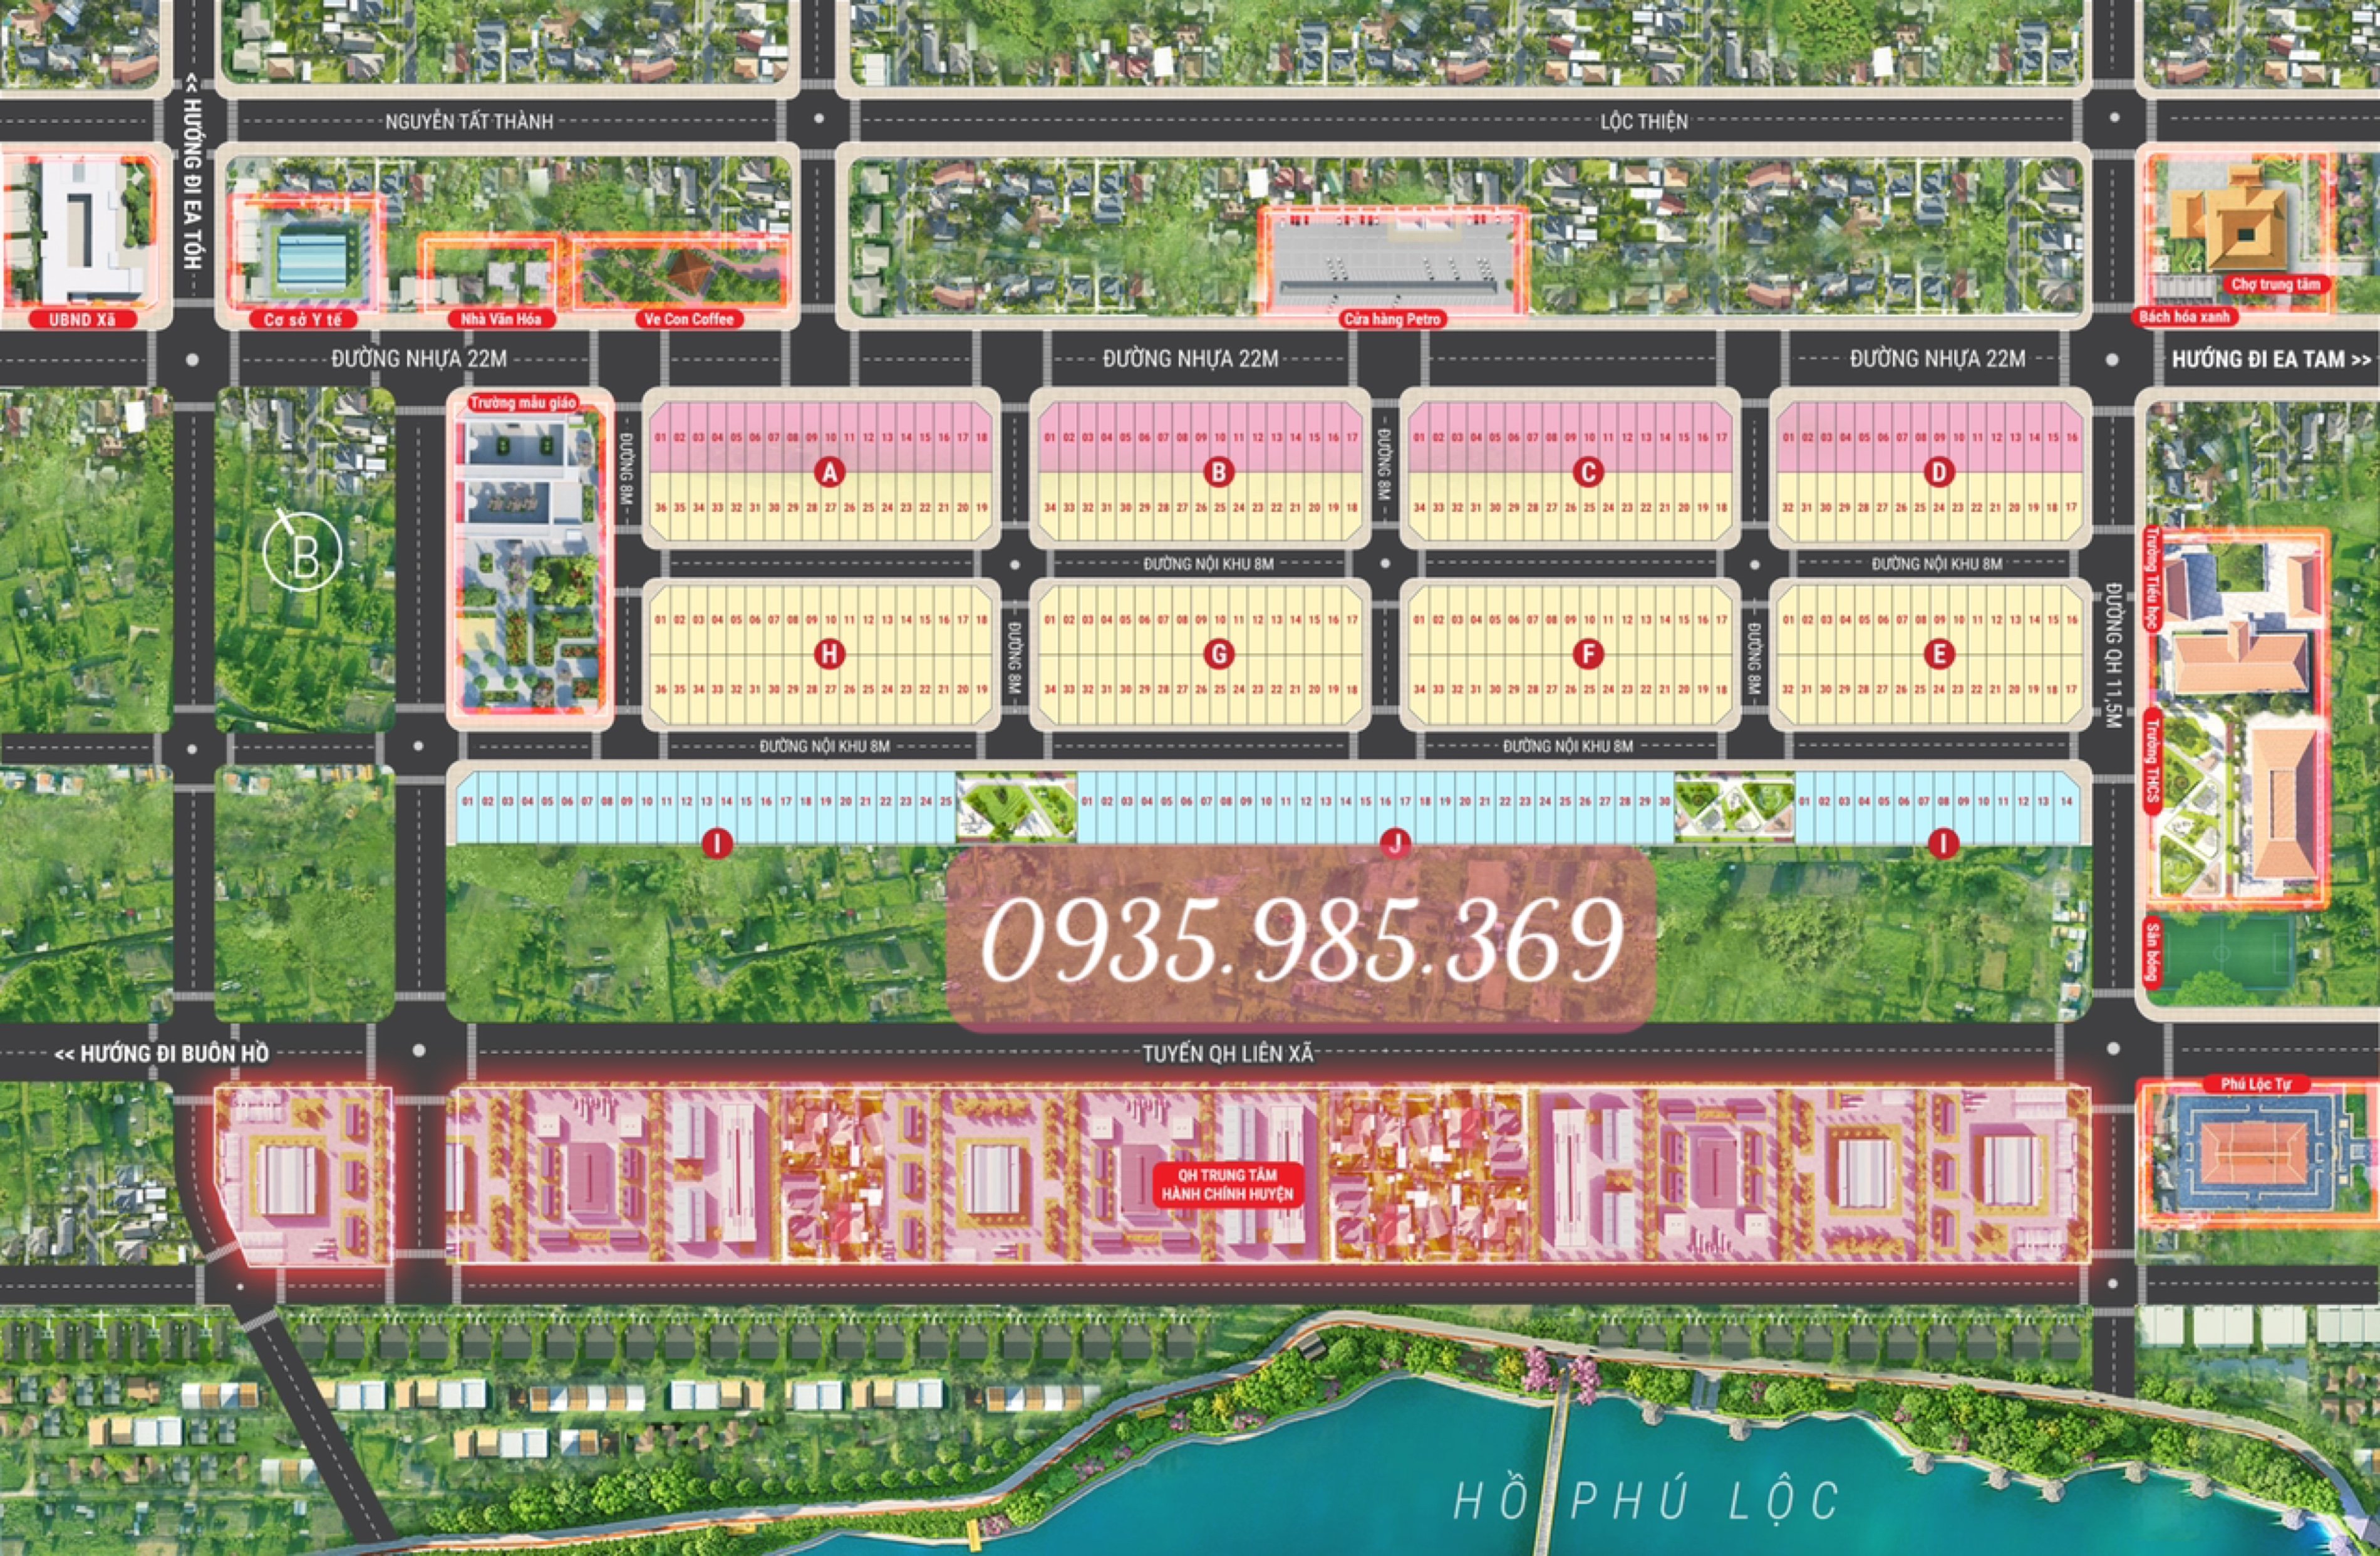 HOT - Giá FULL chỉ 879 triệu, sổ đỏ riêng từng nền KDC Phú Lộc - Krong Năng 4